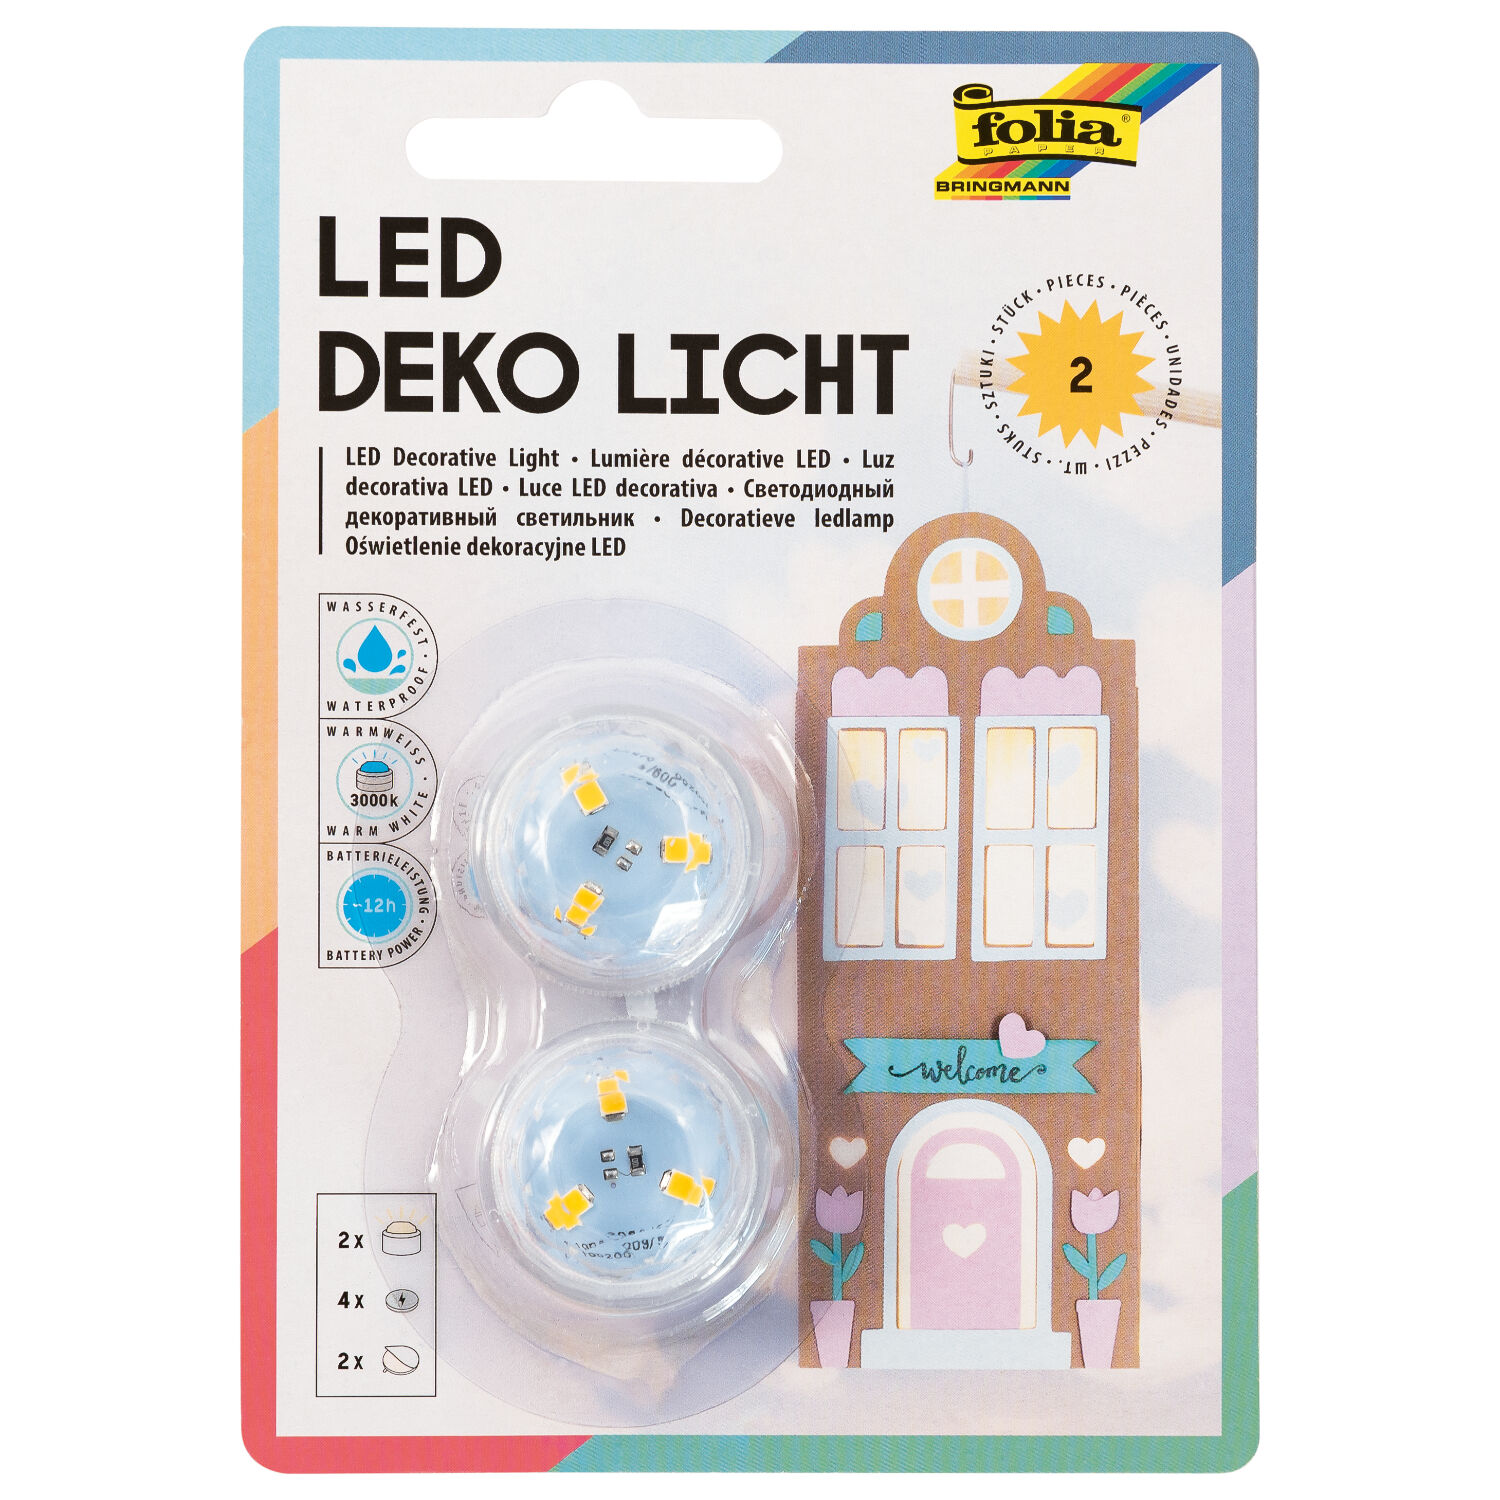 LED Deko-Licht, 2 Stck inkl. 4 Batterien